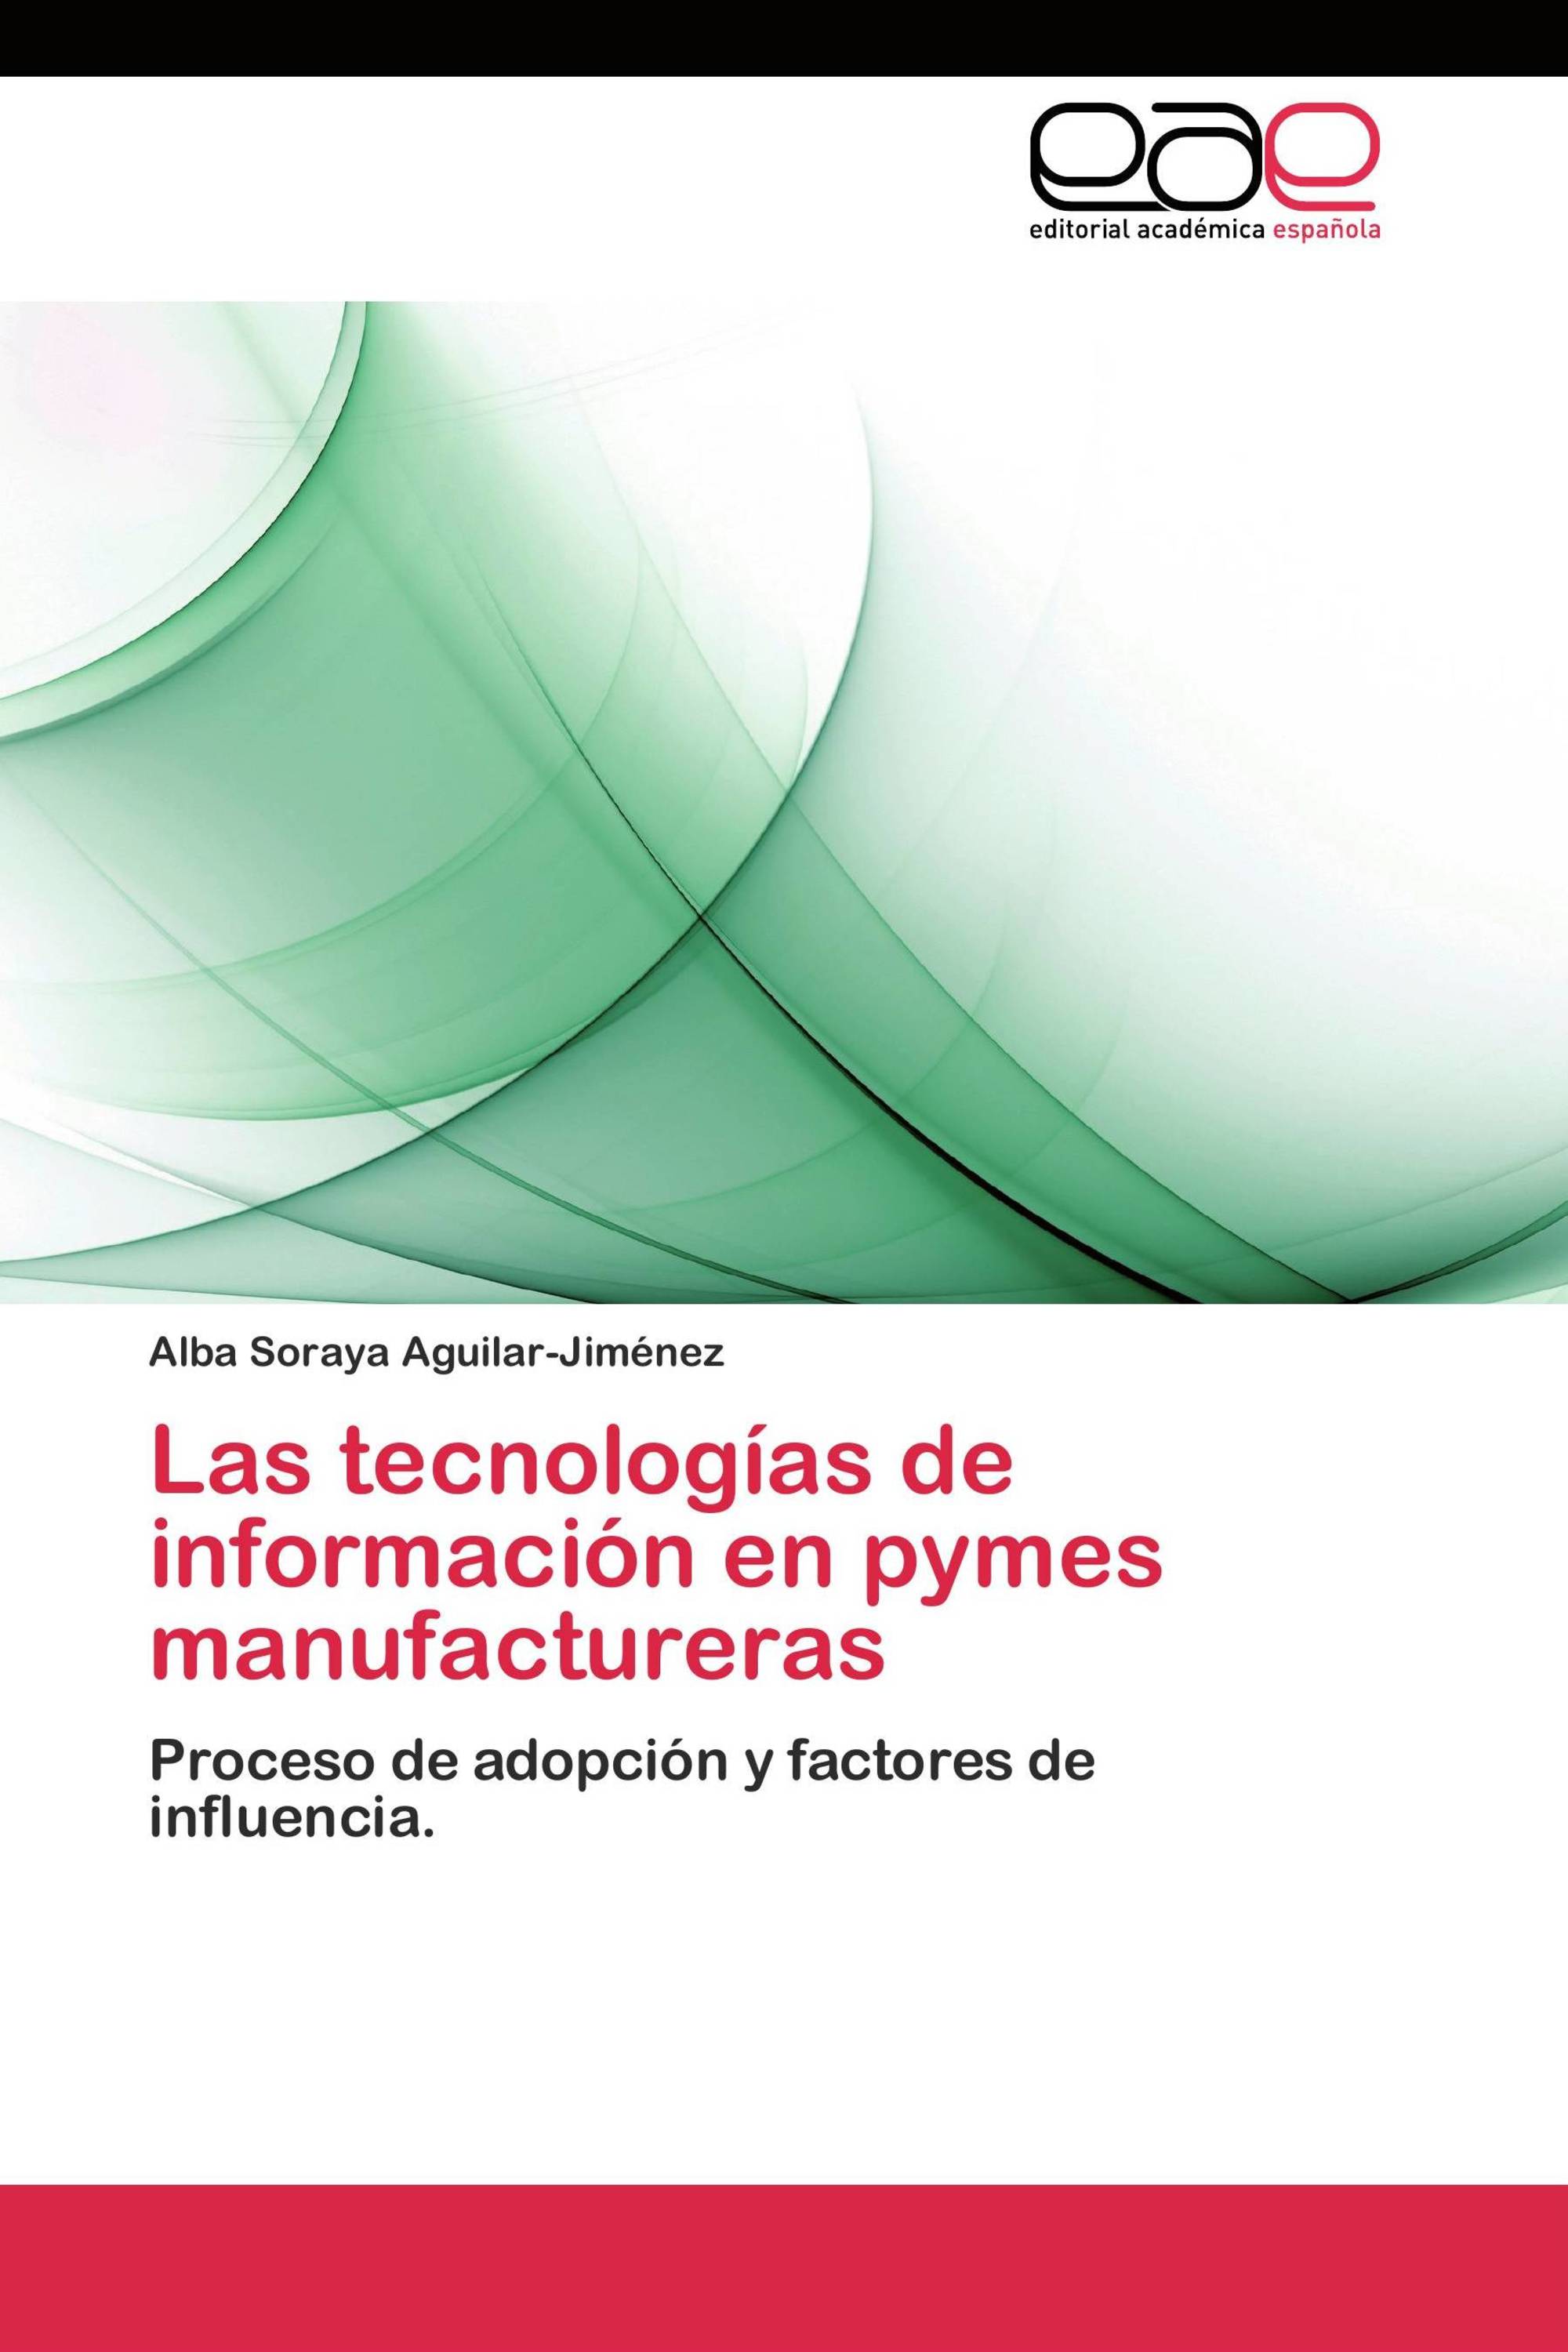 Las tecnologías de información en pymes manufactureras